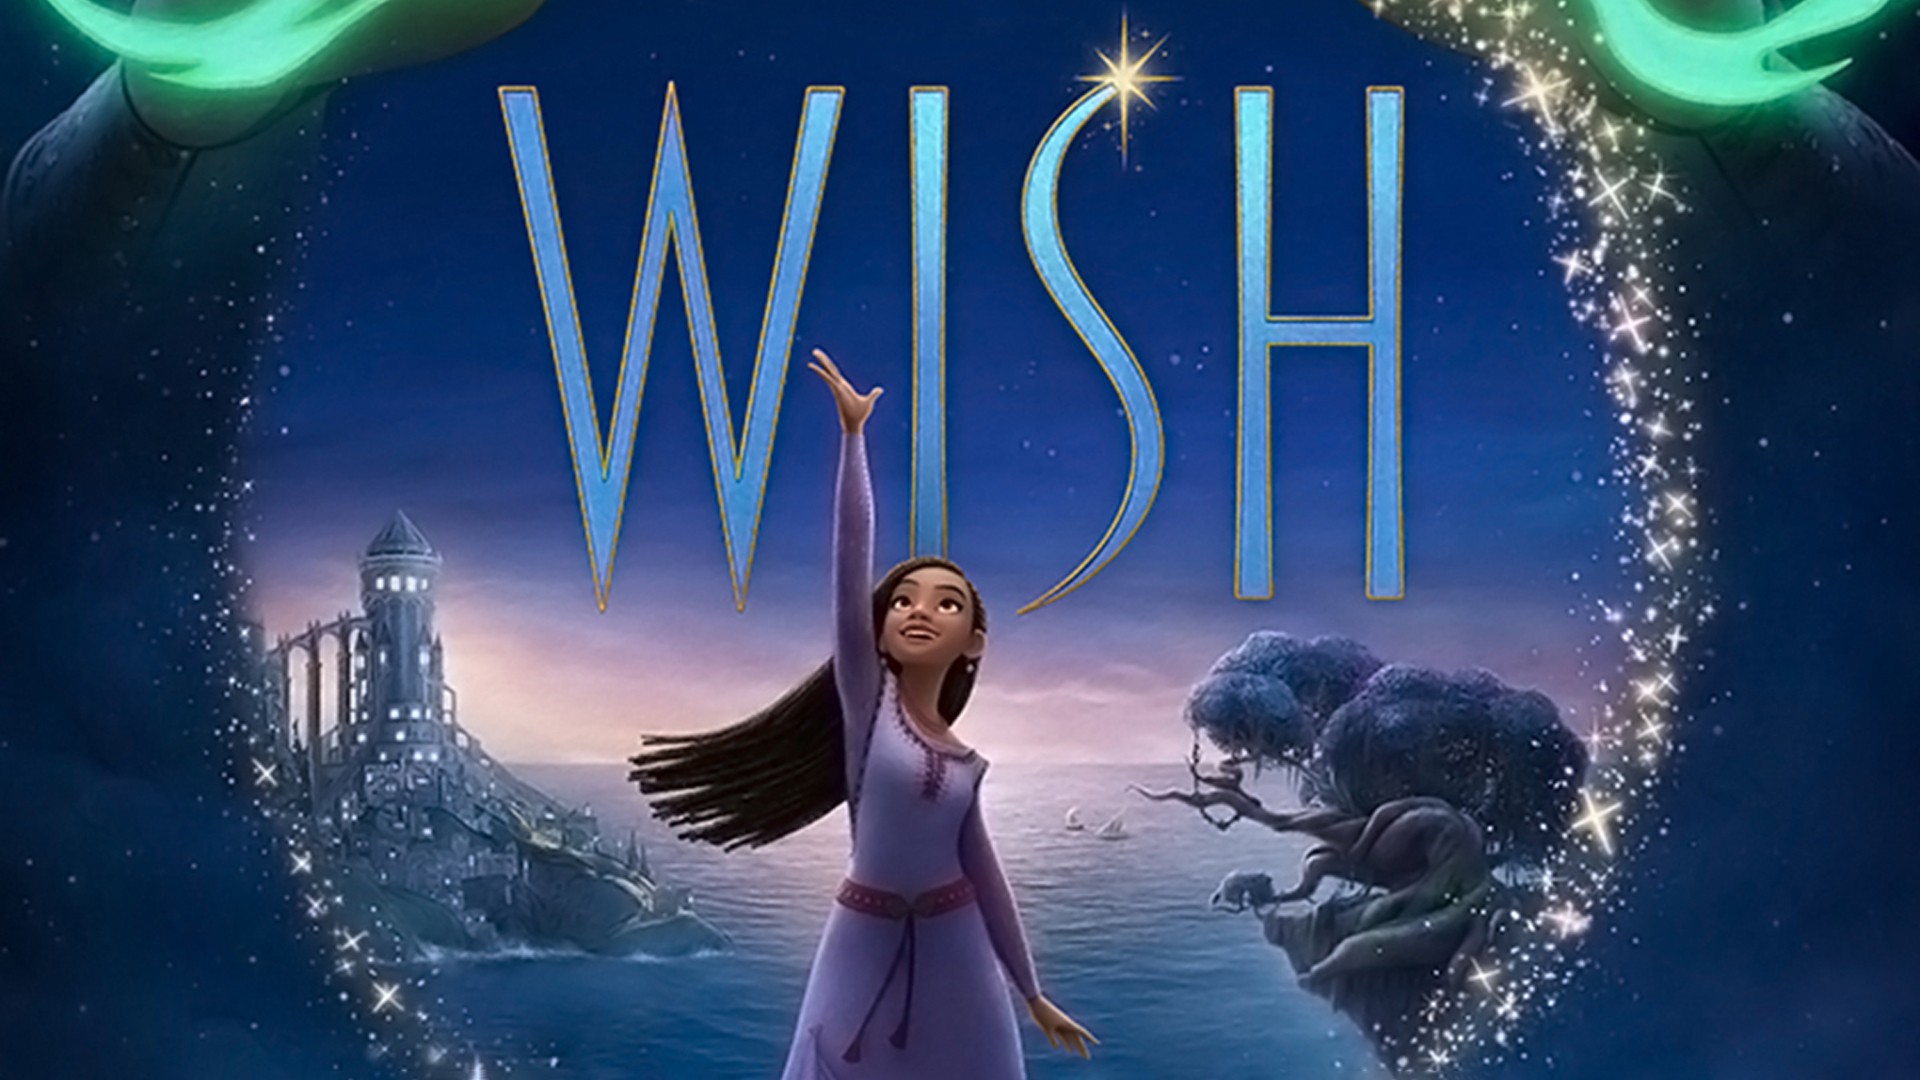 Wish (U)